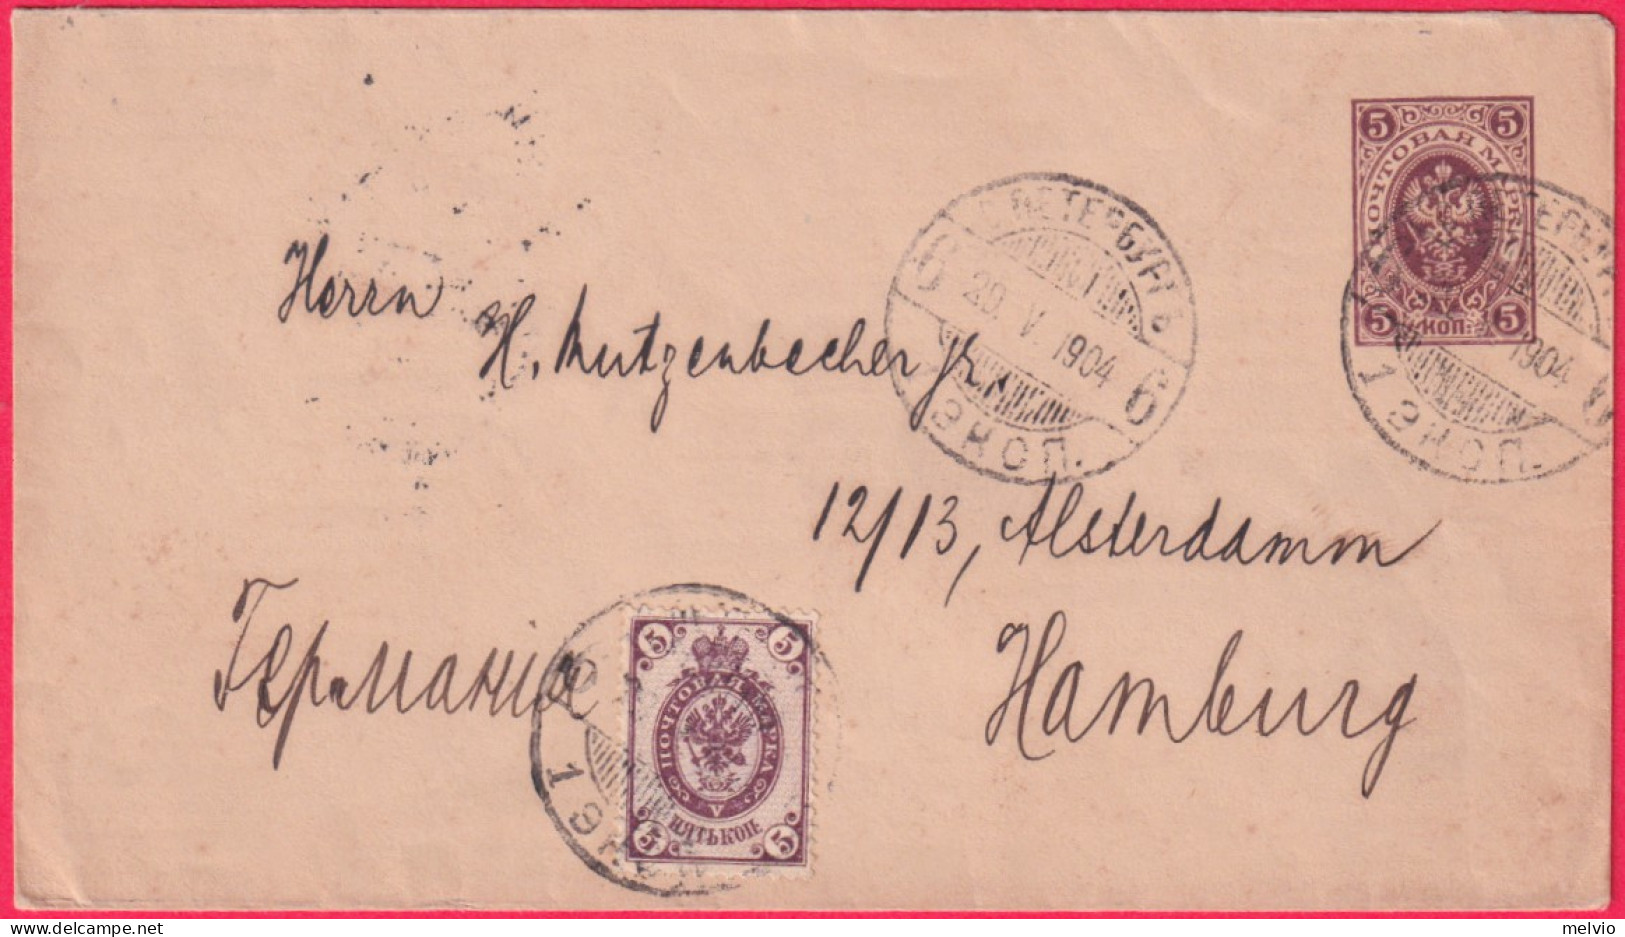 1904-Russia Biglietto Postale 5k.con Affrancatura Aggiunta (valori Gemelli)per L - Briefe U. Dokumente